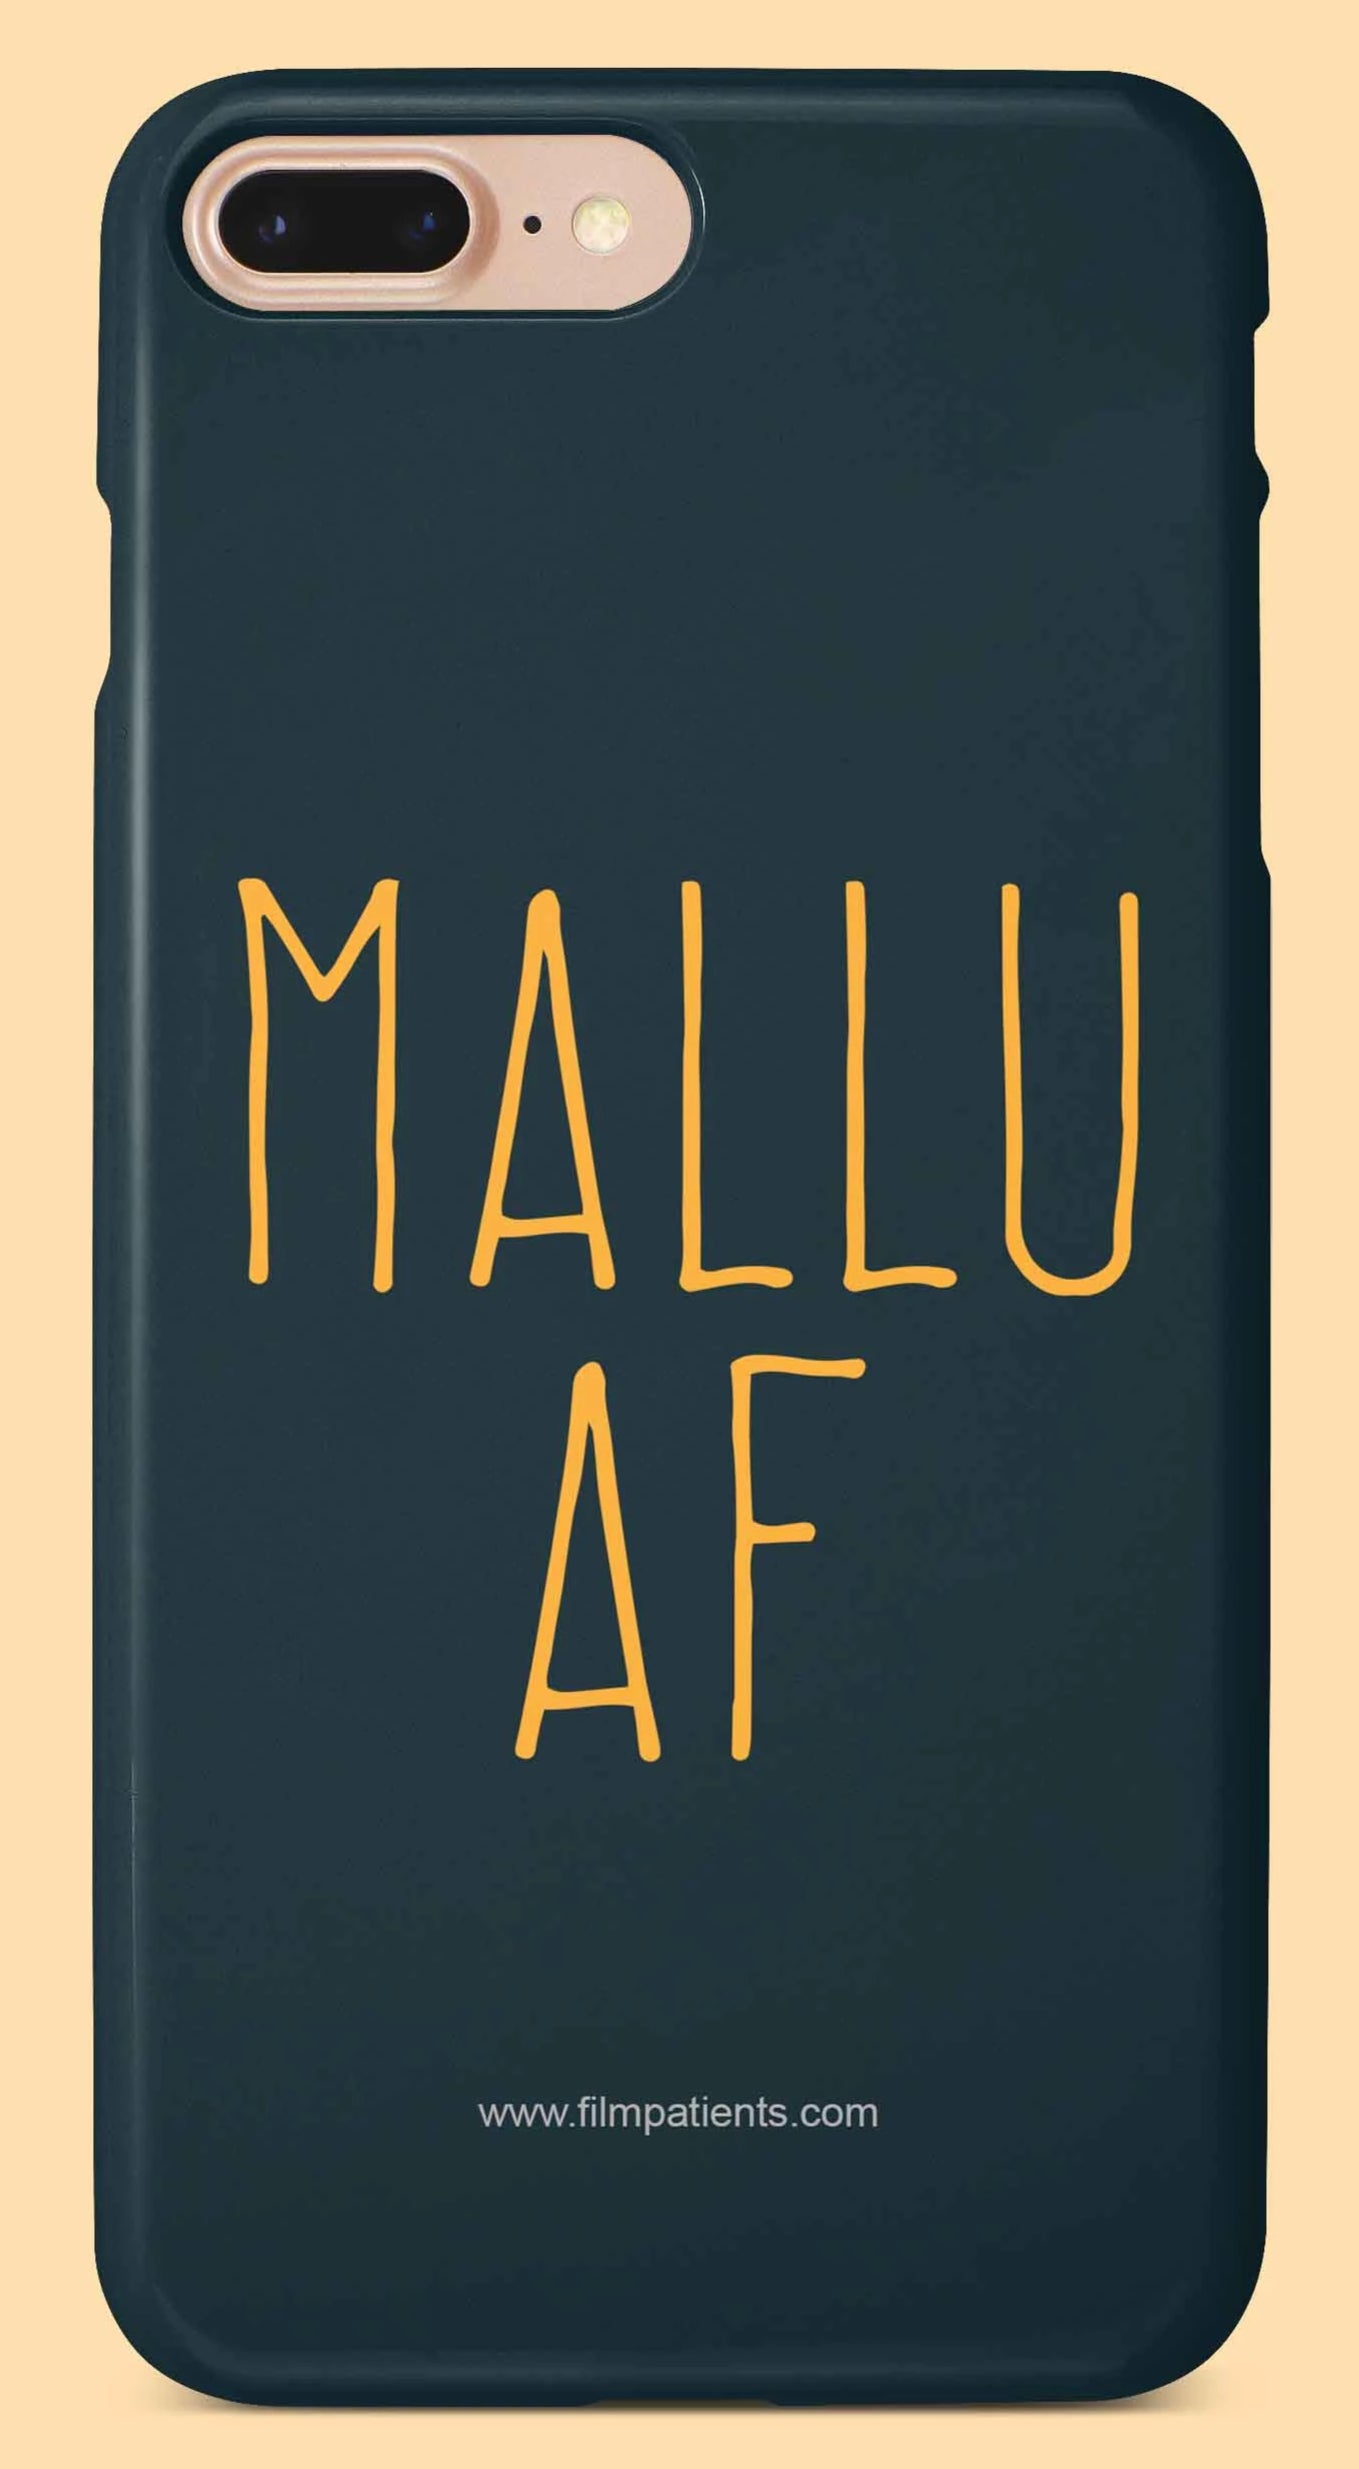 Mallu AF Mobile Cover | Film Patients